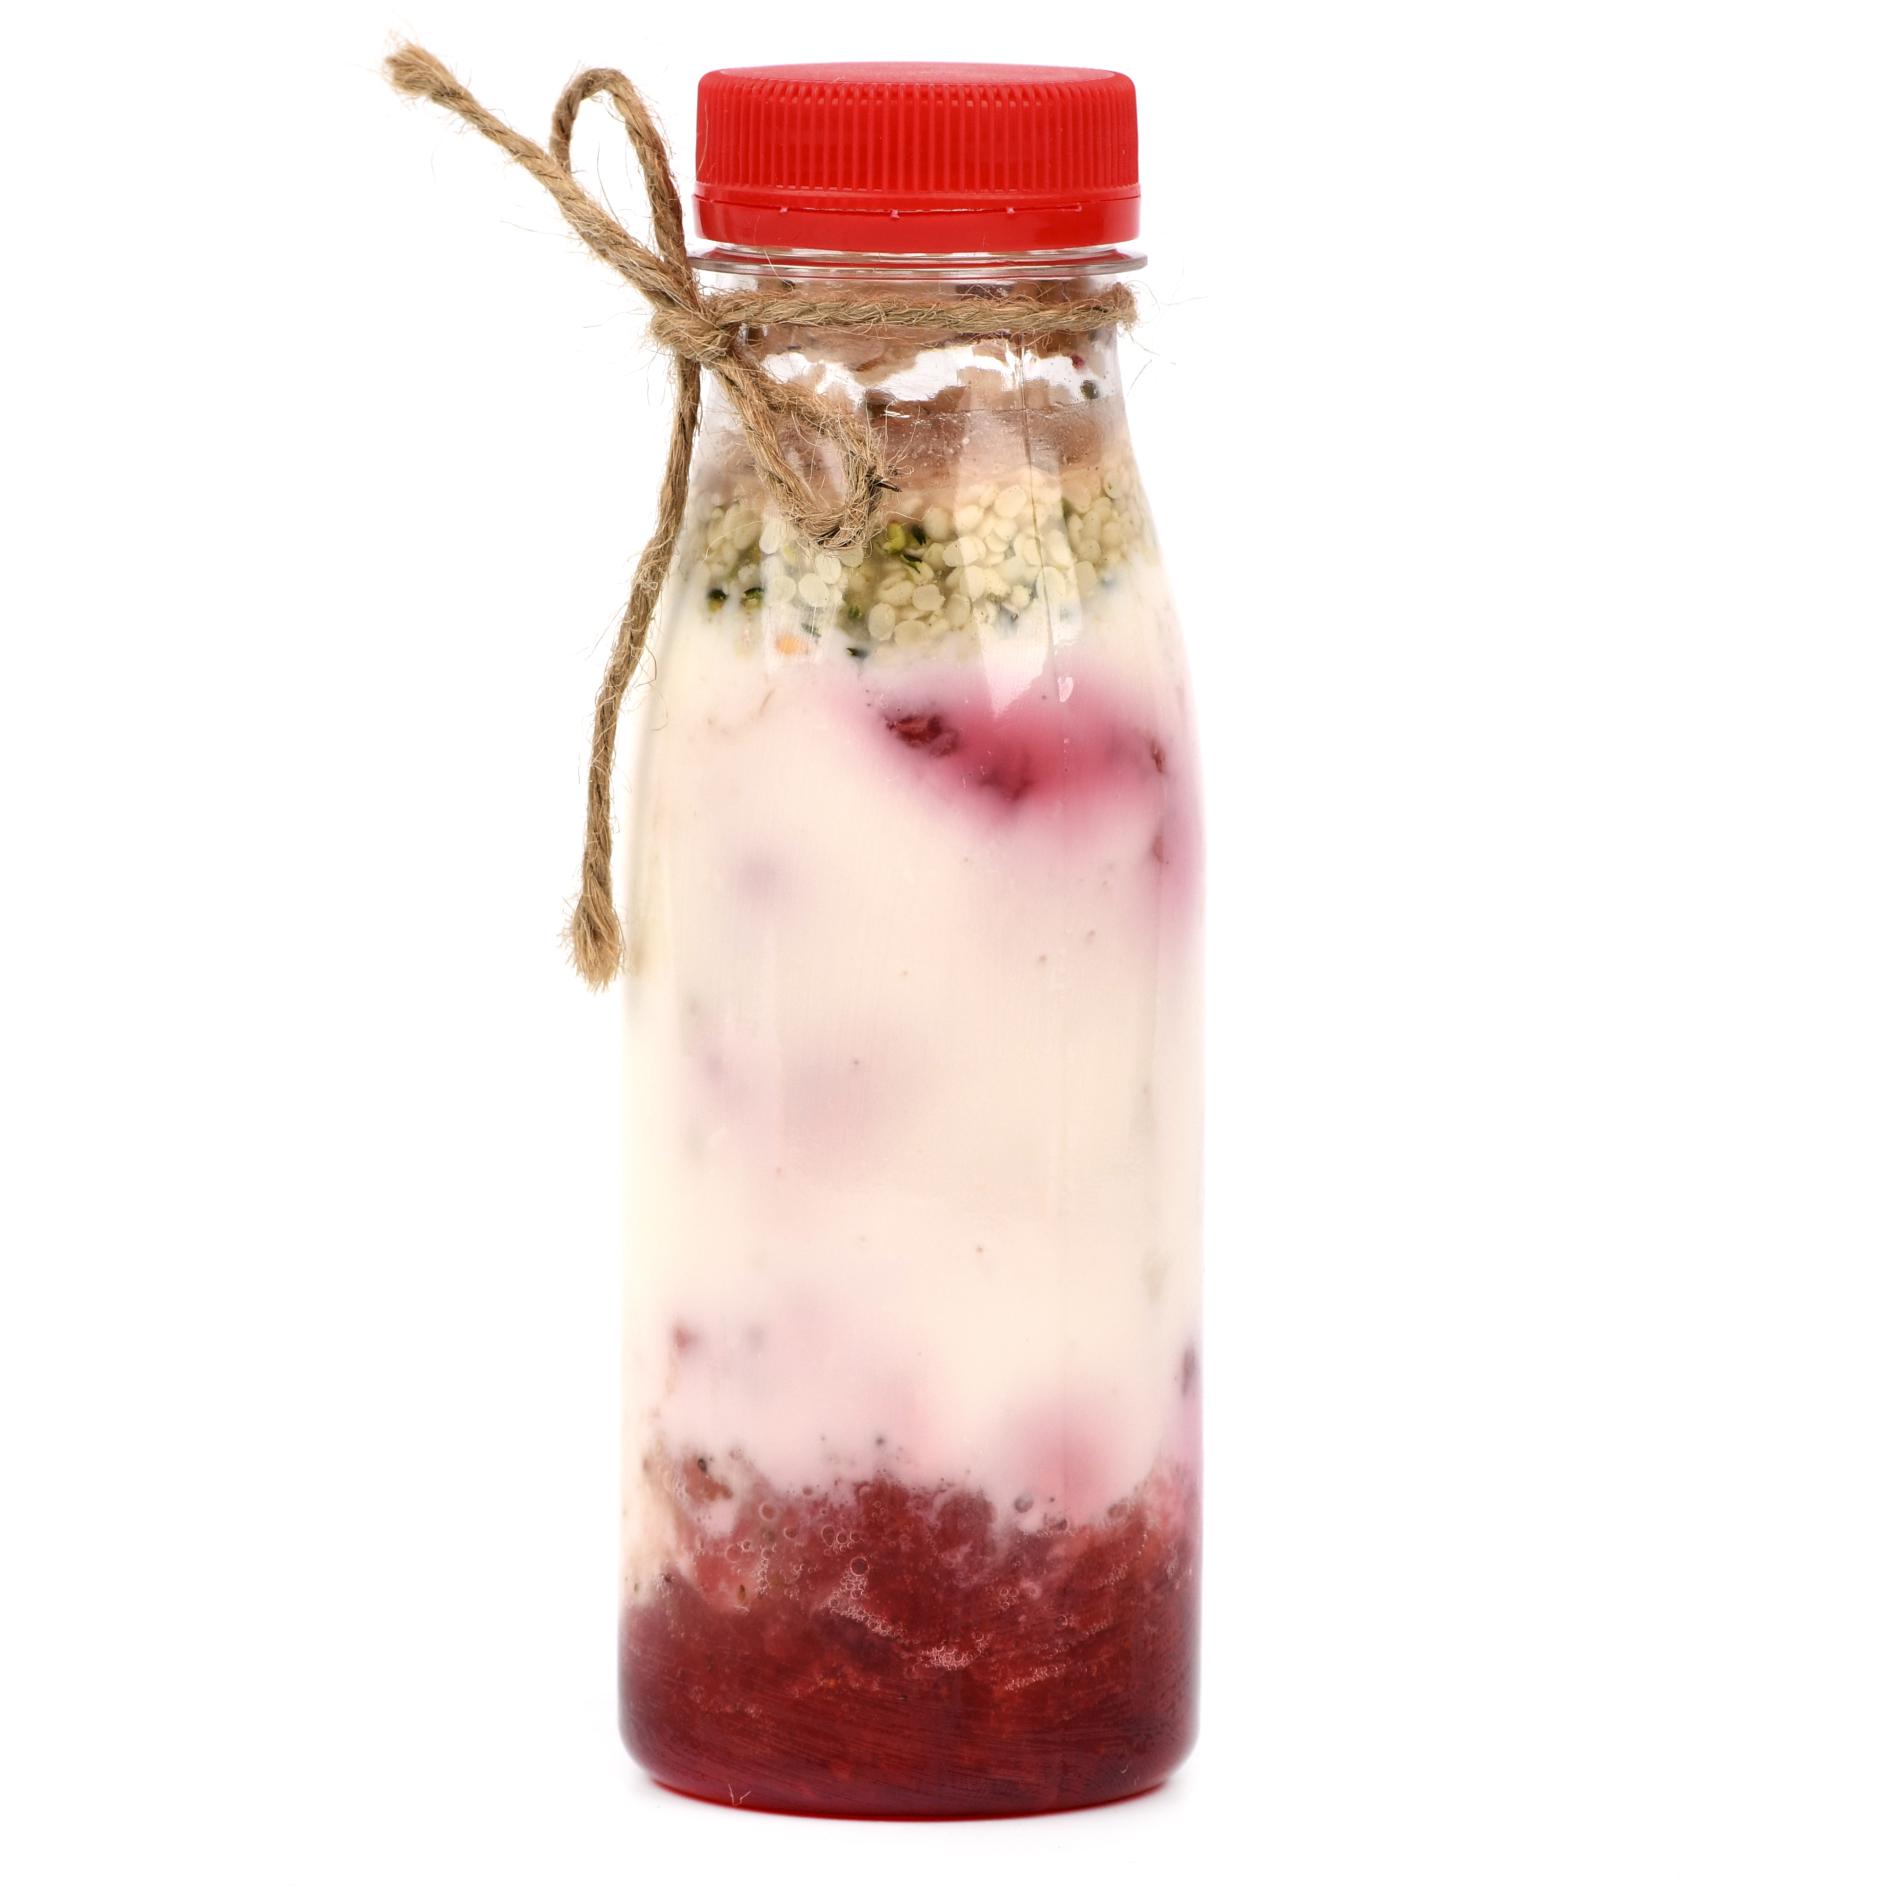 Йогурт с семенами конопли, малиной и клубникой 220г от Анны Смирновой